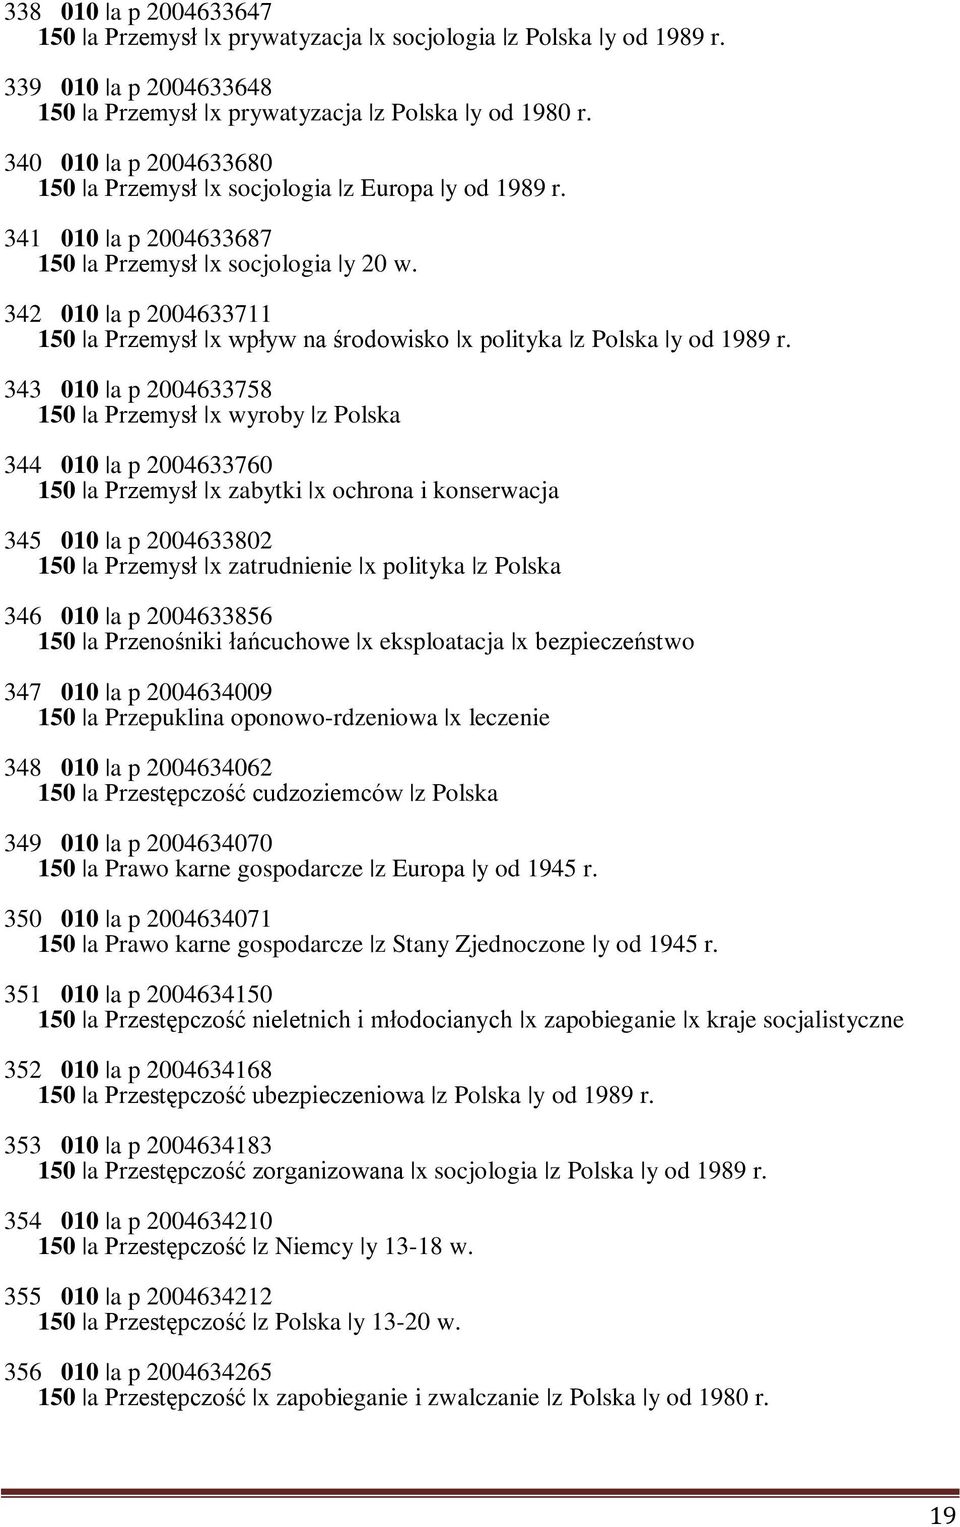 342 010 a p 2004633711 150 a Przemysł x wpływ na środowisko x polityka z Polska y od 1989 r.